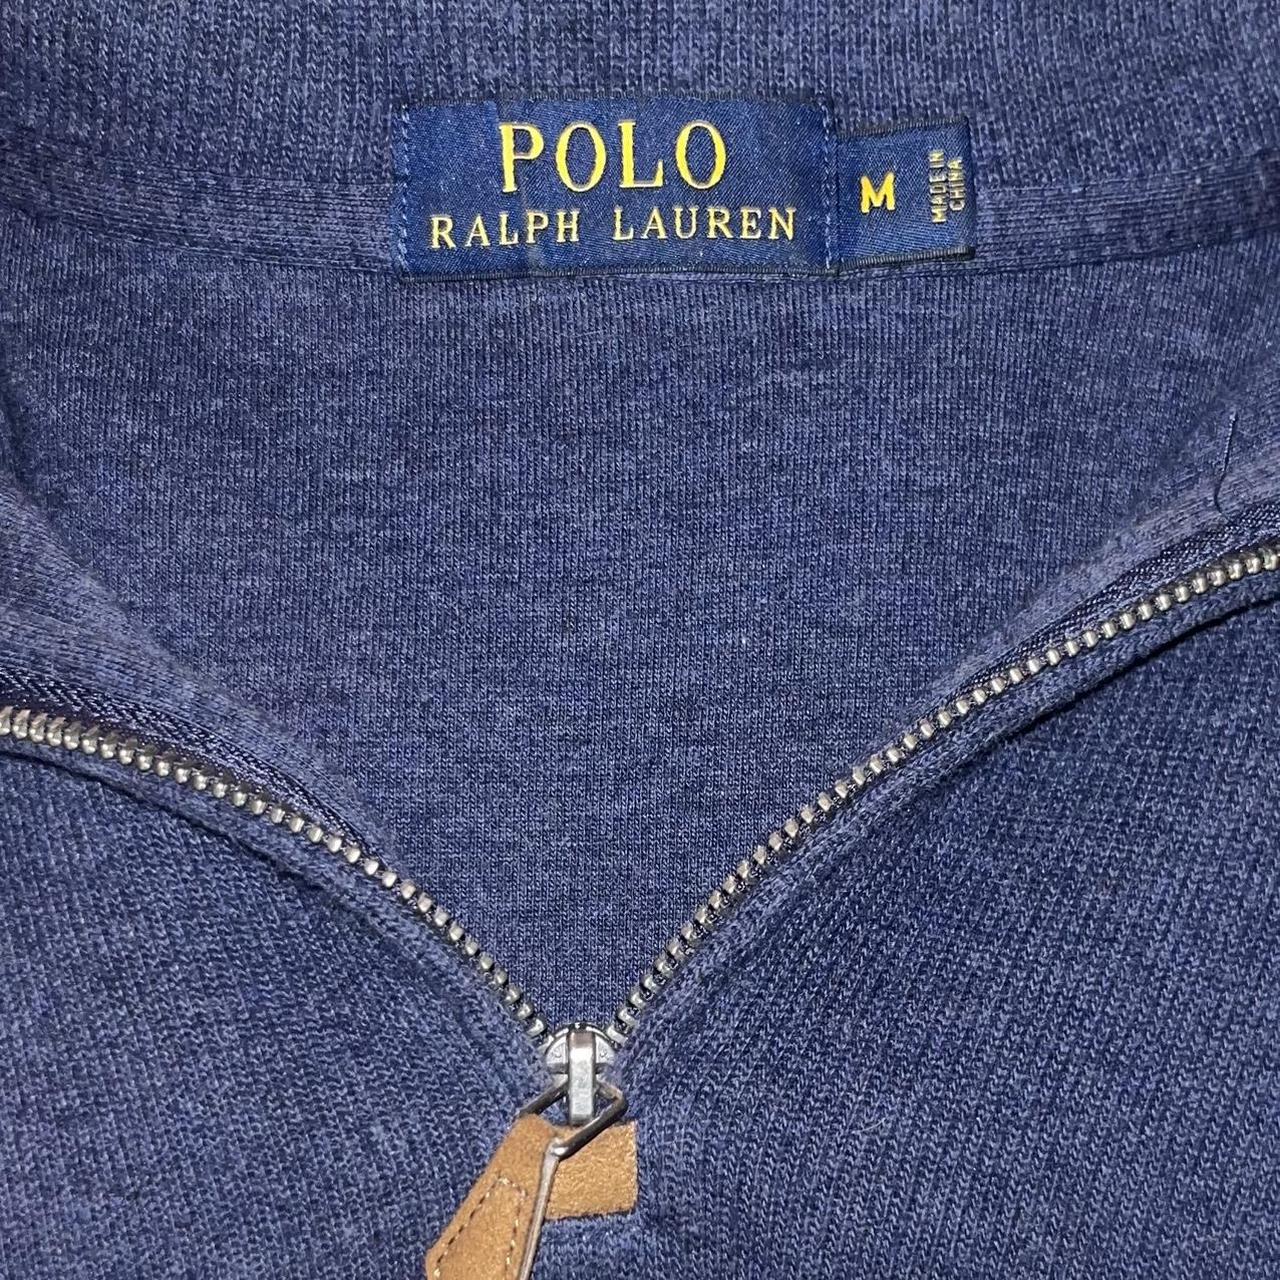 Ralph Lauren Navy Blue quarter-zip sweater Size:Medium - Depop